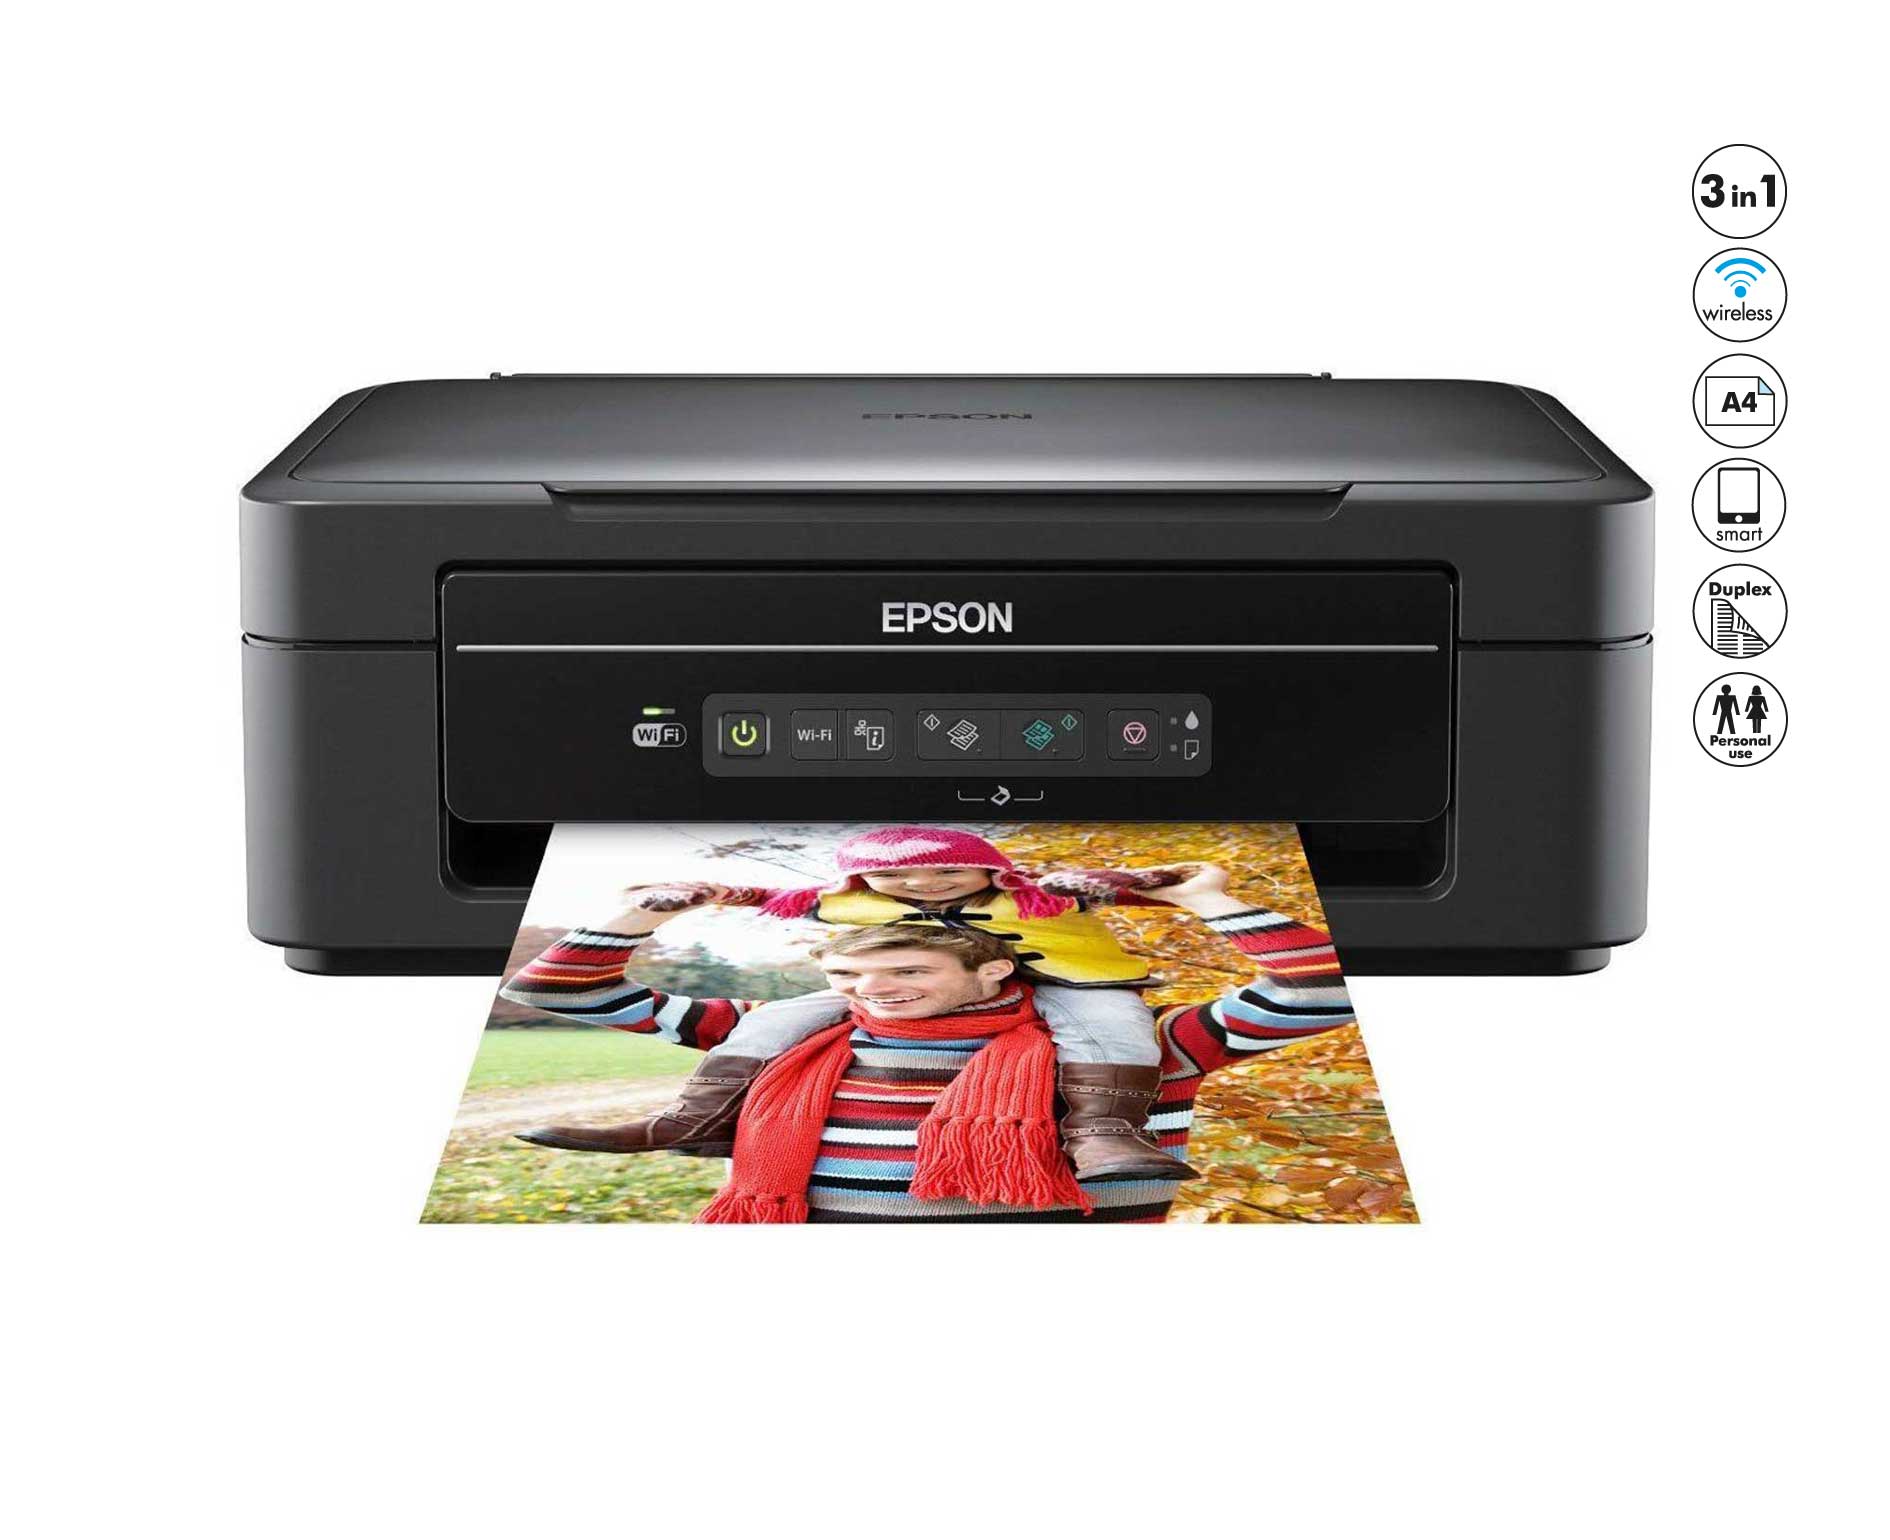 Недорогие принтеры для печати. МФУ Epson l3151. Принтер Эпсон 202. Эпсон XP 205. Epson принтер цветной xp203.